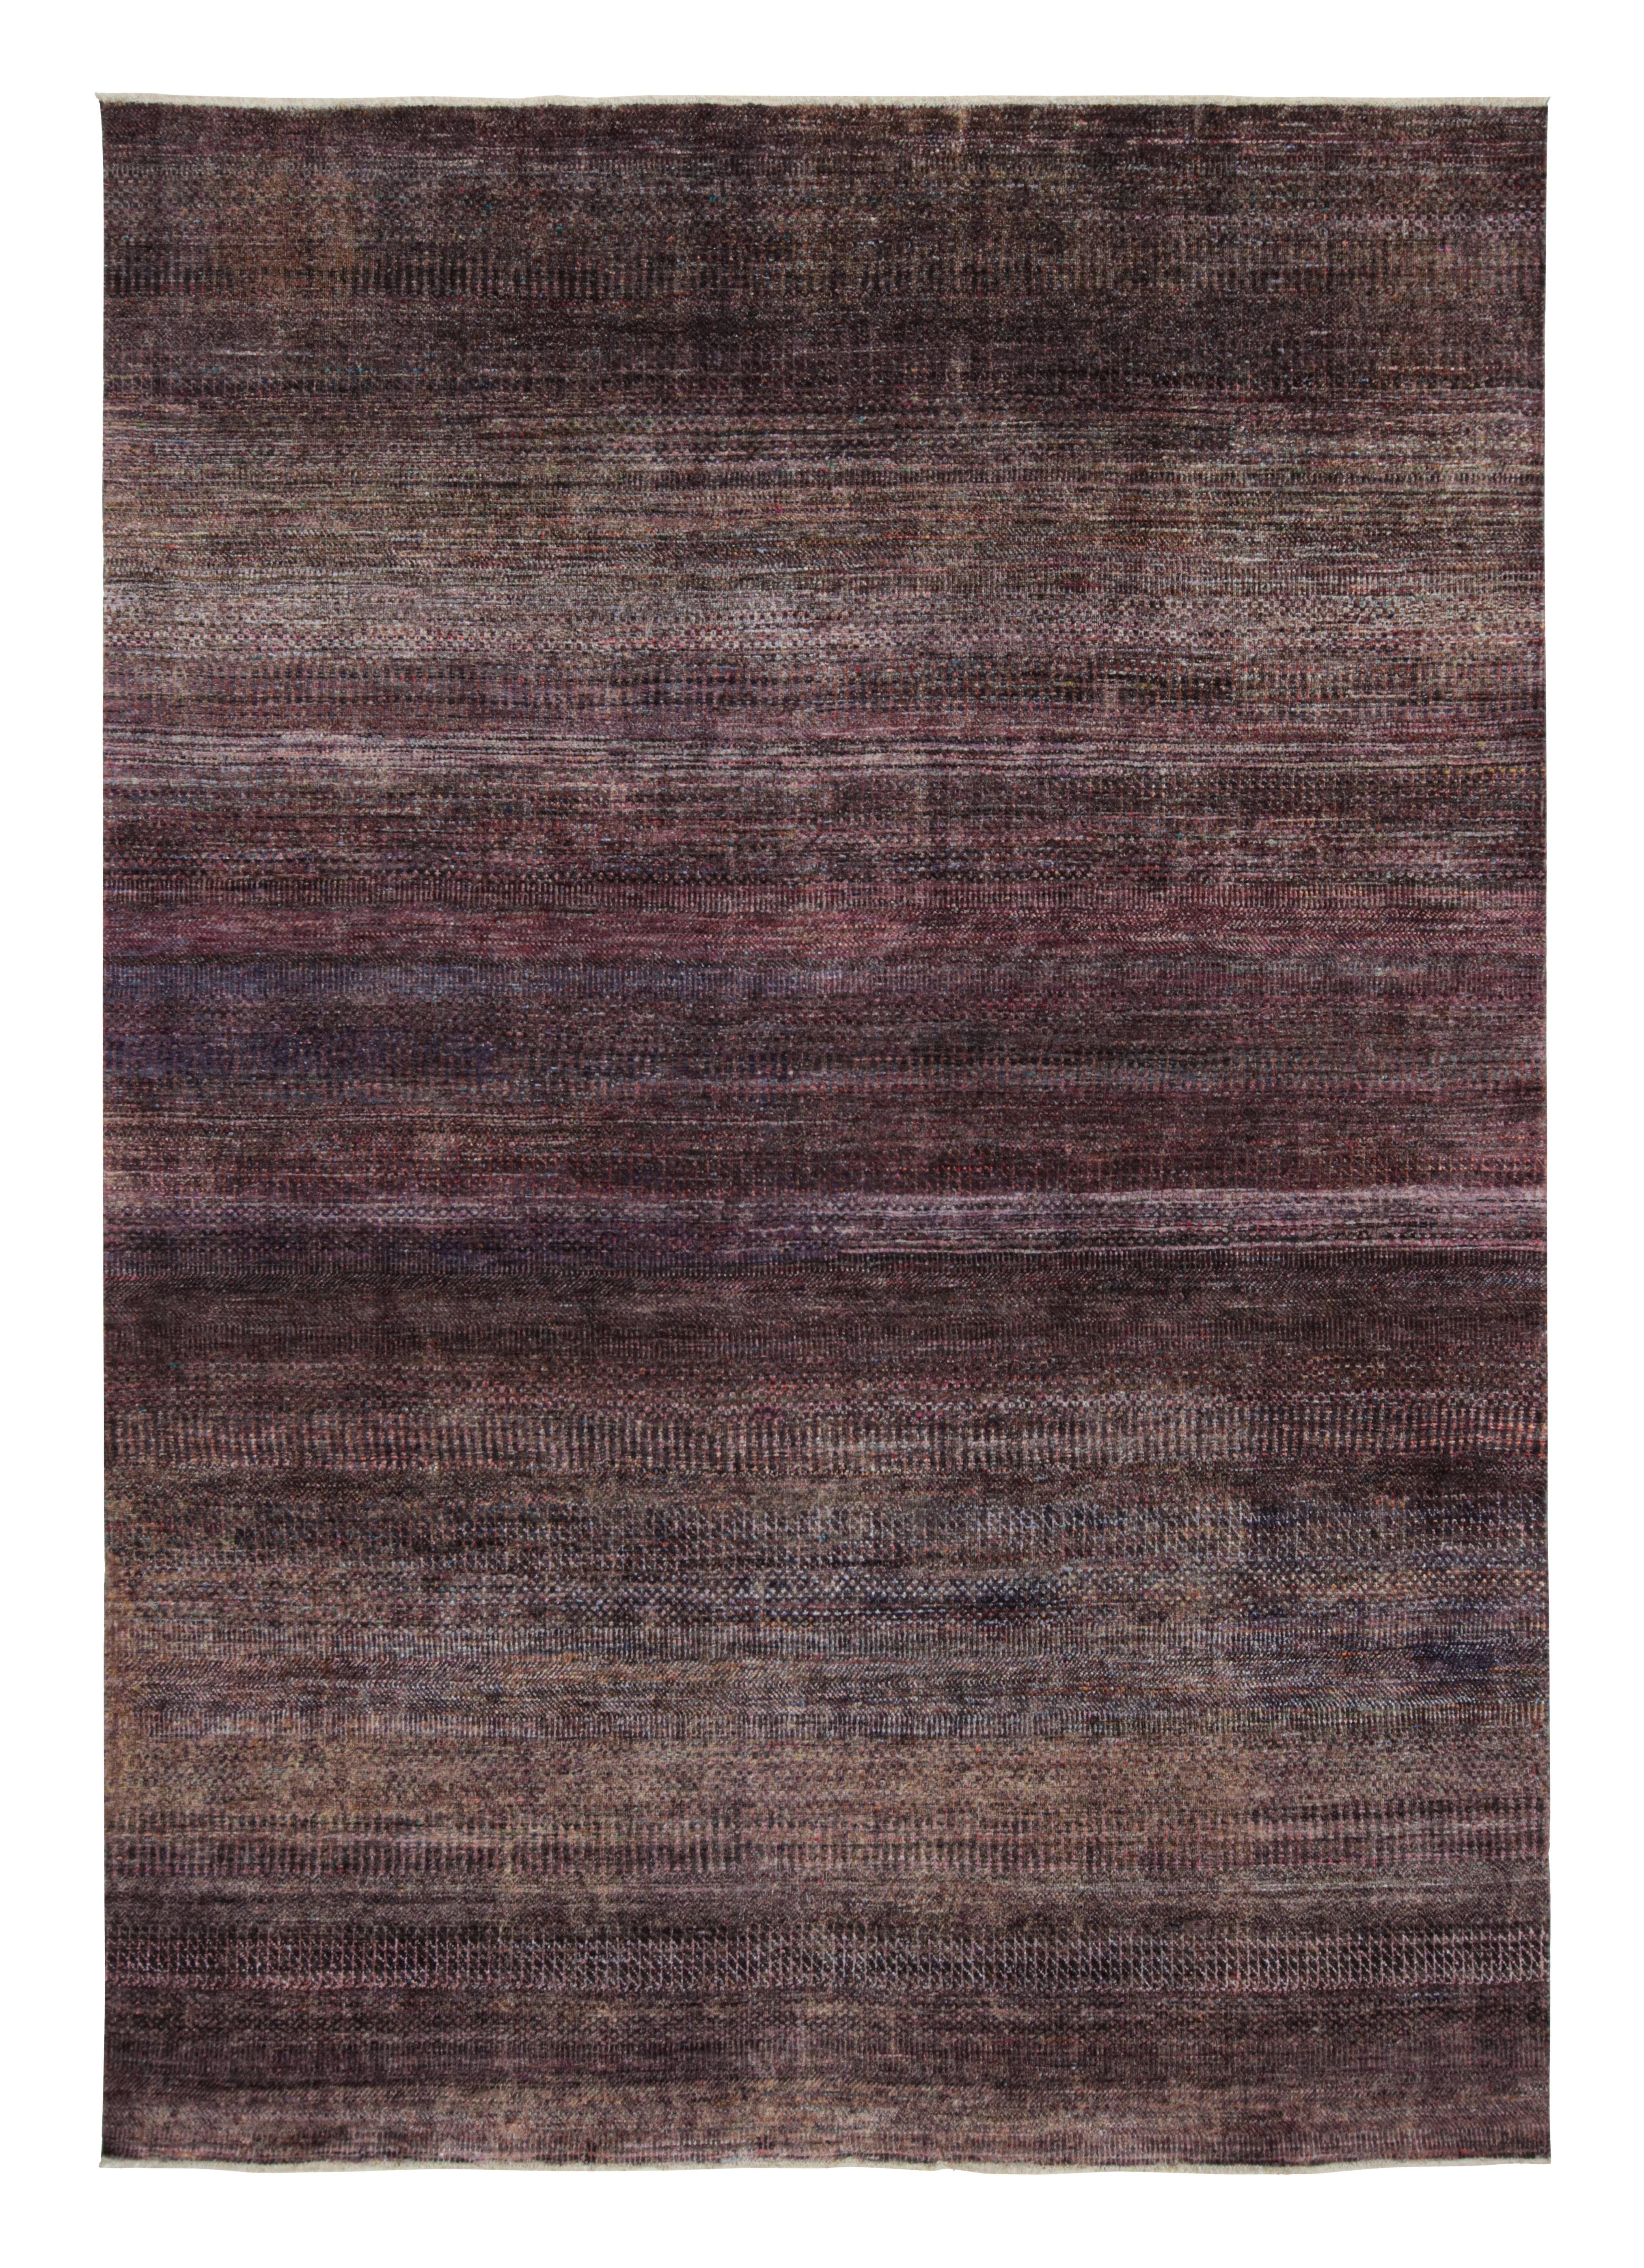 Ce tapis 9x12 est un nouvel ajout audacieux à la Collection Texture of Color de Rug & Kilim.

Sur le Design :

Réalisé en soie nouée à la main, ce tapis reflète une nouvelle approche du thème de cette collection, notamment une teinture végétale